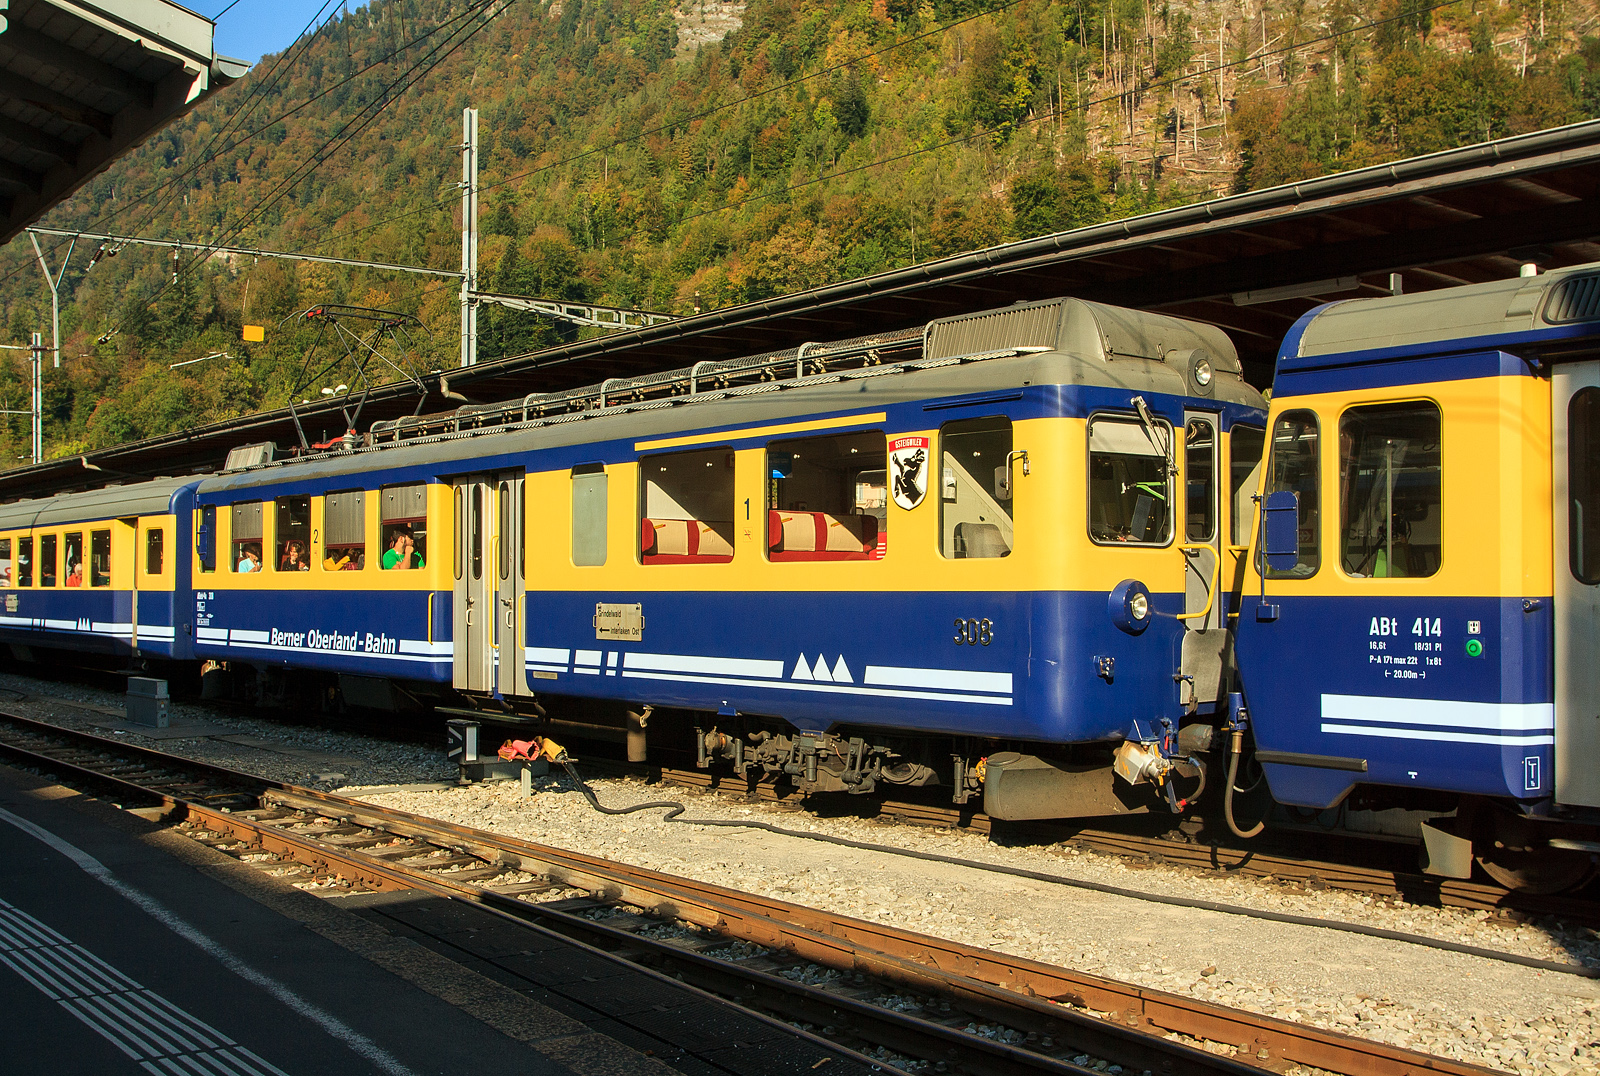 Eingereiht in einen BOB Pendelzug (Interlaken Ost – Grindelwald) am 02.10.2011 im Bahnhof Interlaken Ost, der BOB ABeh 4/4 I 308 „Gsteigwiler“.

Die BOB ABeh 4/4 I sind meterspurige Elektrotriebwagen der Berner Oberland-Bahn (BOB) für gemischten Adhäsions- und Zahnradbetrieb. Sie wurden gemeinschaftlich hergestellt von der Schweizerische Industrie Gesellschaft (SIG), der Schweizerische Lokomotiv- und Maschinenfabrik in Winterthur (SLM) und von Brown, Boveri & Cie. (BBC). 

Nach der Inbetriebnahme der drei Triebwagen ABDeh 4/4 (301 – 303) im Jahre 1949 konnten die Fahrleistungen erheblich erhöht werden. Da man mit drei Triebwagen allerdings nur die Hälfte der Leistung übernehmen konnte, kamen die Lokomotiven HGe 3/3 21 bis 29 weiterhin zum Einsatz, die jedoch den Nachteil einer deutlich niedrigeren Maximalgeschwindigkeit hatten. Aus Kostengründen war eine weitere Aufstockung des Triebwagenbestandes nicht möglich.

Mitte 1958 trat ein neues Schweizer Eisenbahngesetz in Kraft, welches finanzielle Hilfe der Kantone und des Bundes ermöglichte. Mit dieser finanziellen Verbesserung machten sich die BOB sofort an die Entwicklung und Planung eines passenden Fahrzeugs. Im Jahre 1965 wurden zunächst die fünf Triebwagen 304 bis 308 geliefert, was ausreichte um zusammen mit den drei ABDeh 4/4 den gesamten Betrieb mit Triebwagen zu übernehmen, die Lokomotiven wurden im Normalbetrieb nicht mehr benötigt. Im Jahre 1979 wurden zwei weitere baugleiche Triebwagen, die 309 und 310 abgeliefert, wobei der Triebwagen 309 im Jahre 1999 an die Bayerische Zugspitzbahn verkauft wurde.

Beim ABeh 4/4 I wurde auf ein Gepäckabteil verzichtet, um ein größeres erste Klasse Abteil einbauen zu können. Ebenfalls wurde auf den Einbau einer Rekuperationsbremse verzichtet, da diese bei den älteren Triebwagen nie richtig funktionierte und ausgebaut werden musste. Als wesentliche Neuerung konnte der abkuppelbare Adhäsionsantrieb auf Zahnstangenstrecken angesehen werden. Mit 1.000 kW Leistung waren die neun Triebwagen wesentlich stärker als die alten ABDeh 4/4.

Auf den Zahnrad-Abschnitten kann der Adhäsions-Antrieb von den Motoren abgekuppelt werden. Die Bremsausrüstung des Triebwagens besteht aus einer Widerstandsbremse als Betriebsbremse, einer Adhäsionsklotzbremse auf alle Radsätze mit Zahnradzusatzbremse und einer auf alle vier Triebzahnräder wirkende Zahnradbremse.

Nach der Ablieferung der neuen ABDeh 8/8-Triebzüge von Stadler im Jahr 2017 wurden die ABeh 4/4 I schrittweise aus dem Verkehr gezogen und ausrangiert, bis man sie im Jahr 2018 alle außer 304 und 310 verschrottete.

TECHNISCHE DATEN der  ABeh 4/4 I 304 bis 310
Anzahl gelieferte Fahrzeuge: 7
Hersteller: SIG, SLM und BBC
Baujahre: 1965 (5 Stück) und 1979 (2 Stück)
Spurweite: 1.000 mm (Meterspur)
Zahnstangensystem: Von Roll, mit der Verzahnungsgeometrie Riggenbach
Achsfolge: Bo'zz Bo'zz 
Länge über Kupplung: 17.020 mm
Breite: 2.680 mm
Höhe: 3.940 mm
Achsstand im Drehgestell: 3.050 mm
Dienstgewicht: 44 t
Triebraddurchmesser: 778 mm (neu)
Zahnraddurchmesser:	 
Dauerleistung: 1.000 kW
Höchstgeschwindigkeit: 70 km/h (Adhäsion) / 30 km/h (Zahnstange)
Zugkraft bei Stundenleistung: 121kN
Anfahrzugkraft: 157 kN
Stromsystem: 1500 V  DC (Gleichstrom)
Sitzplätze 1.Klasse: 12
Sitzplätze 2.Klasse: 32
Kupplungssystem:  GFN (halbautomatische +GF+ Kupplung wie Brünigbahn)
